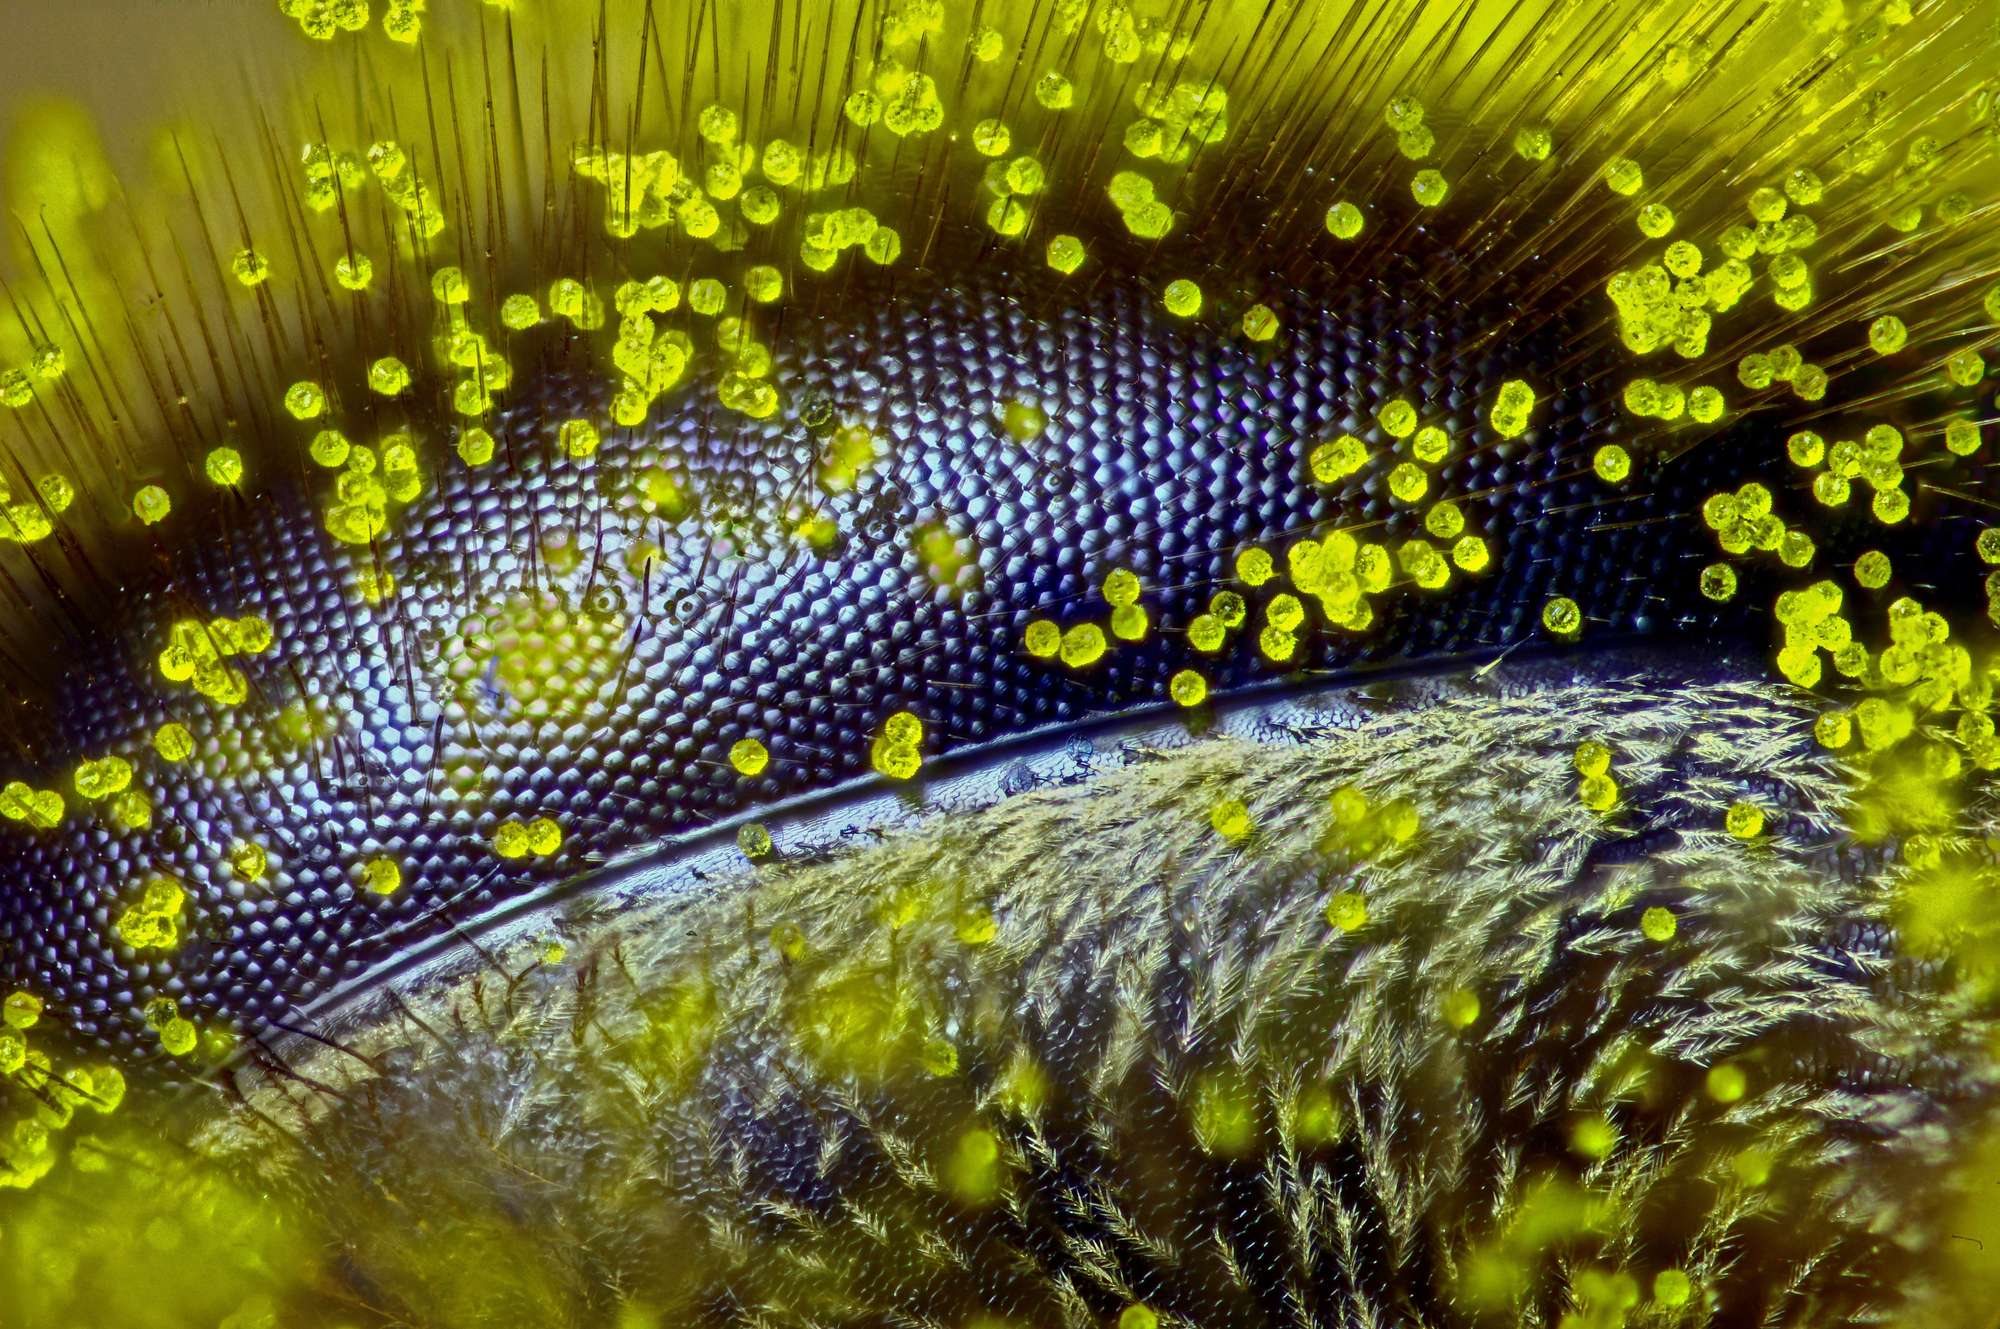 Глаз медоносной пчелы, покрытый пыльцой от фотографа Ральфа Гримма